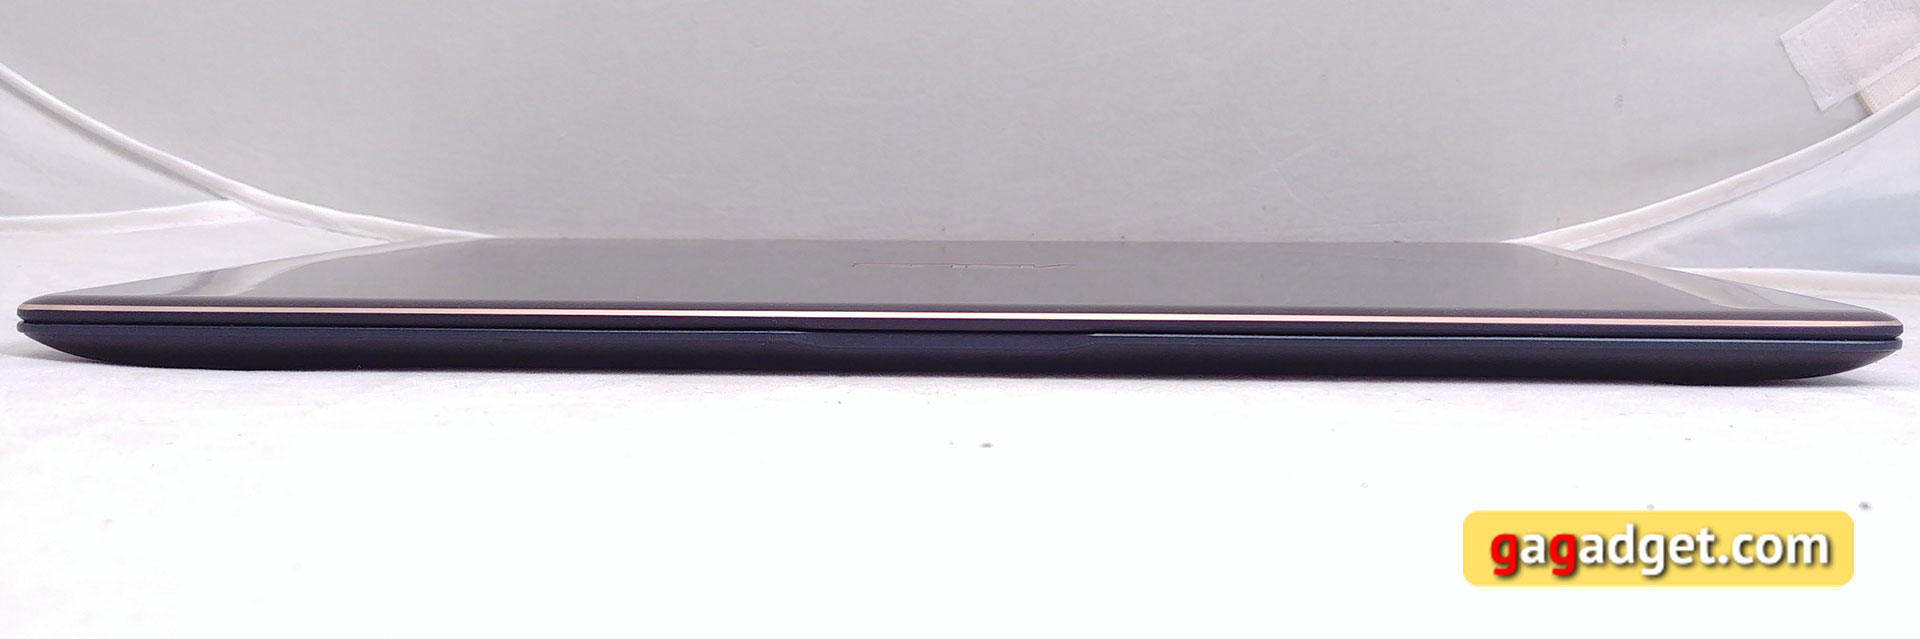 Обзор ASUS ZenBook S UX391UA: прочный ноутбук в компактном корпусе весом всего 1 кг-7